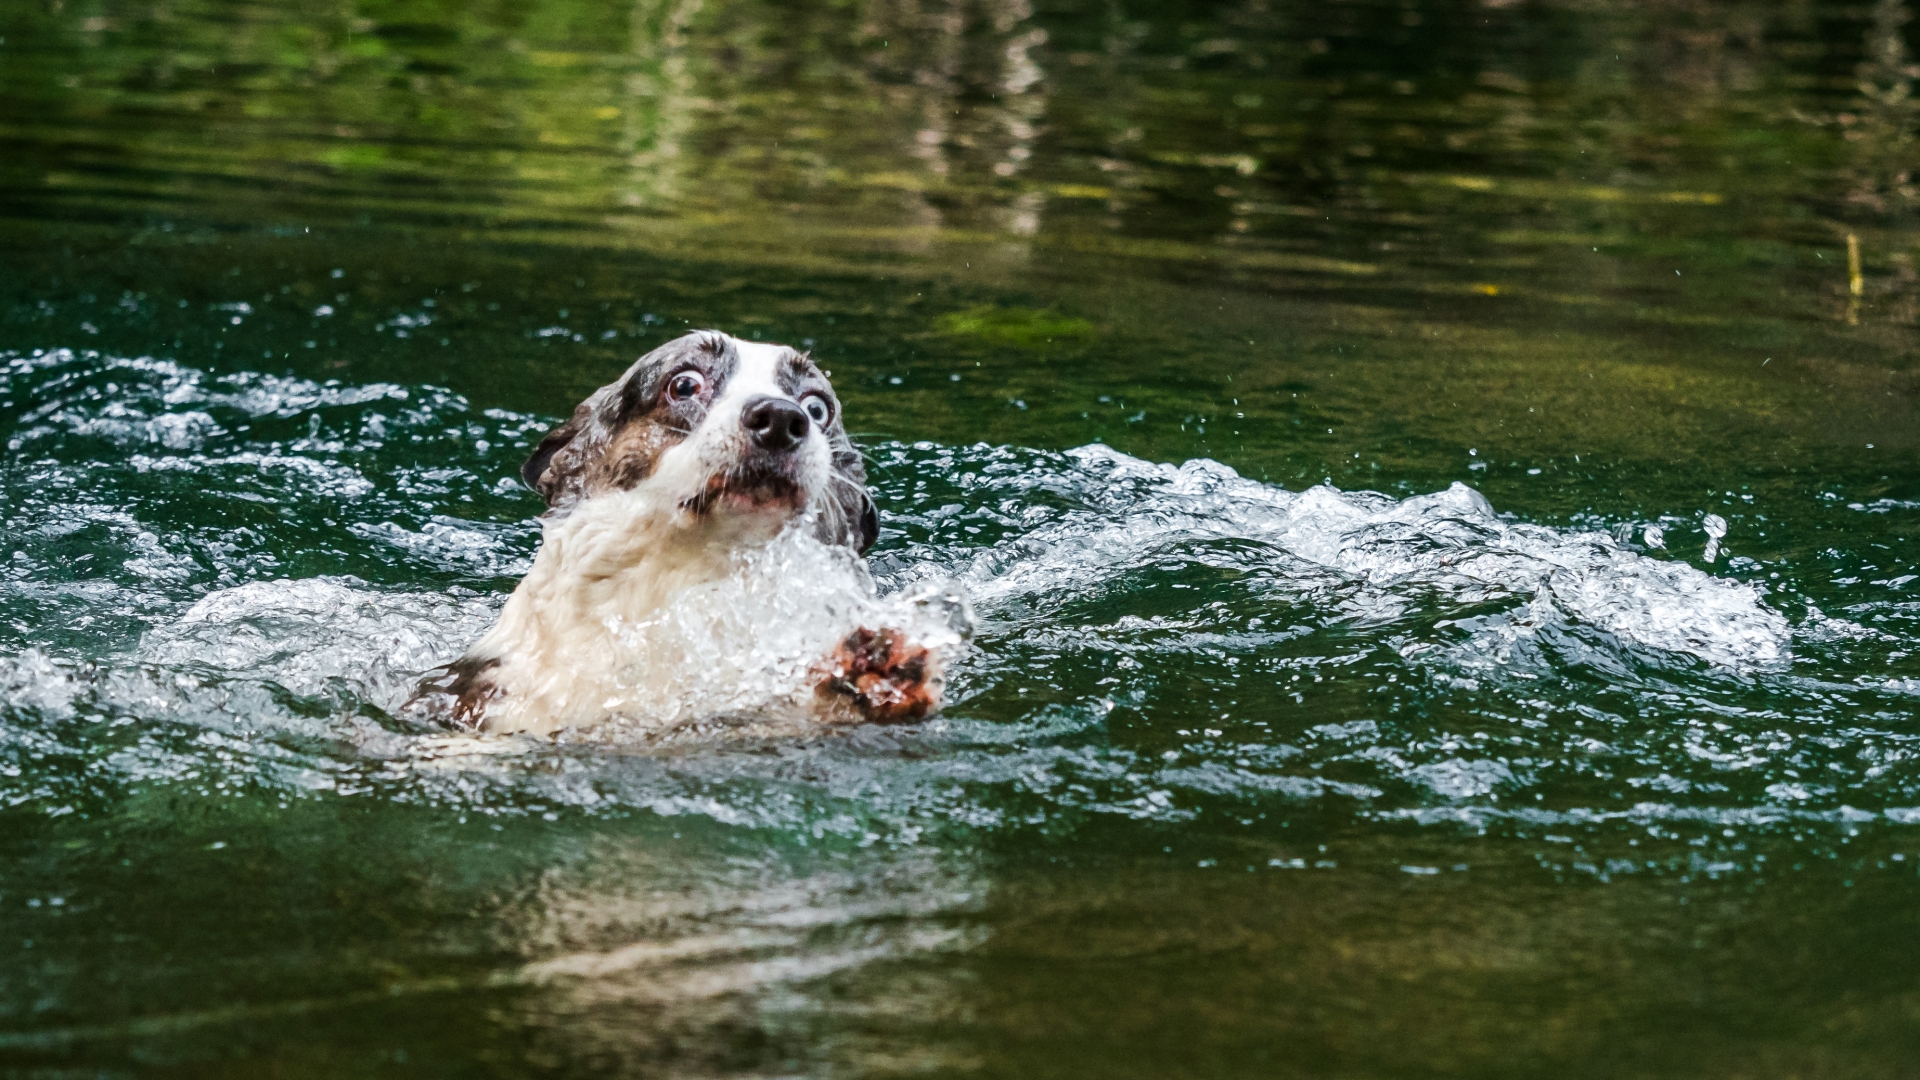 Bajba jutott kutya a vízben